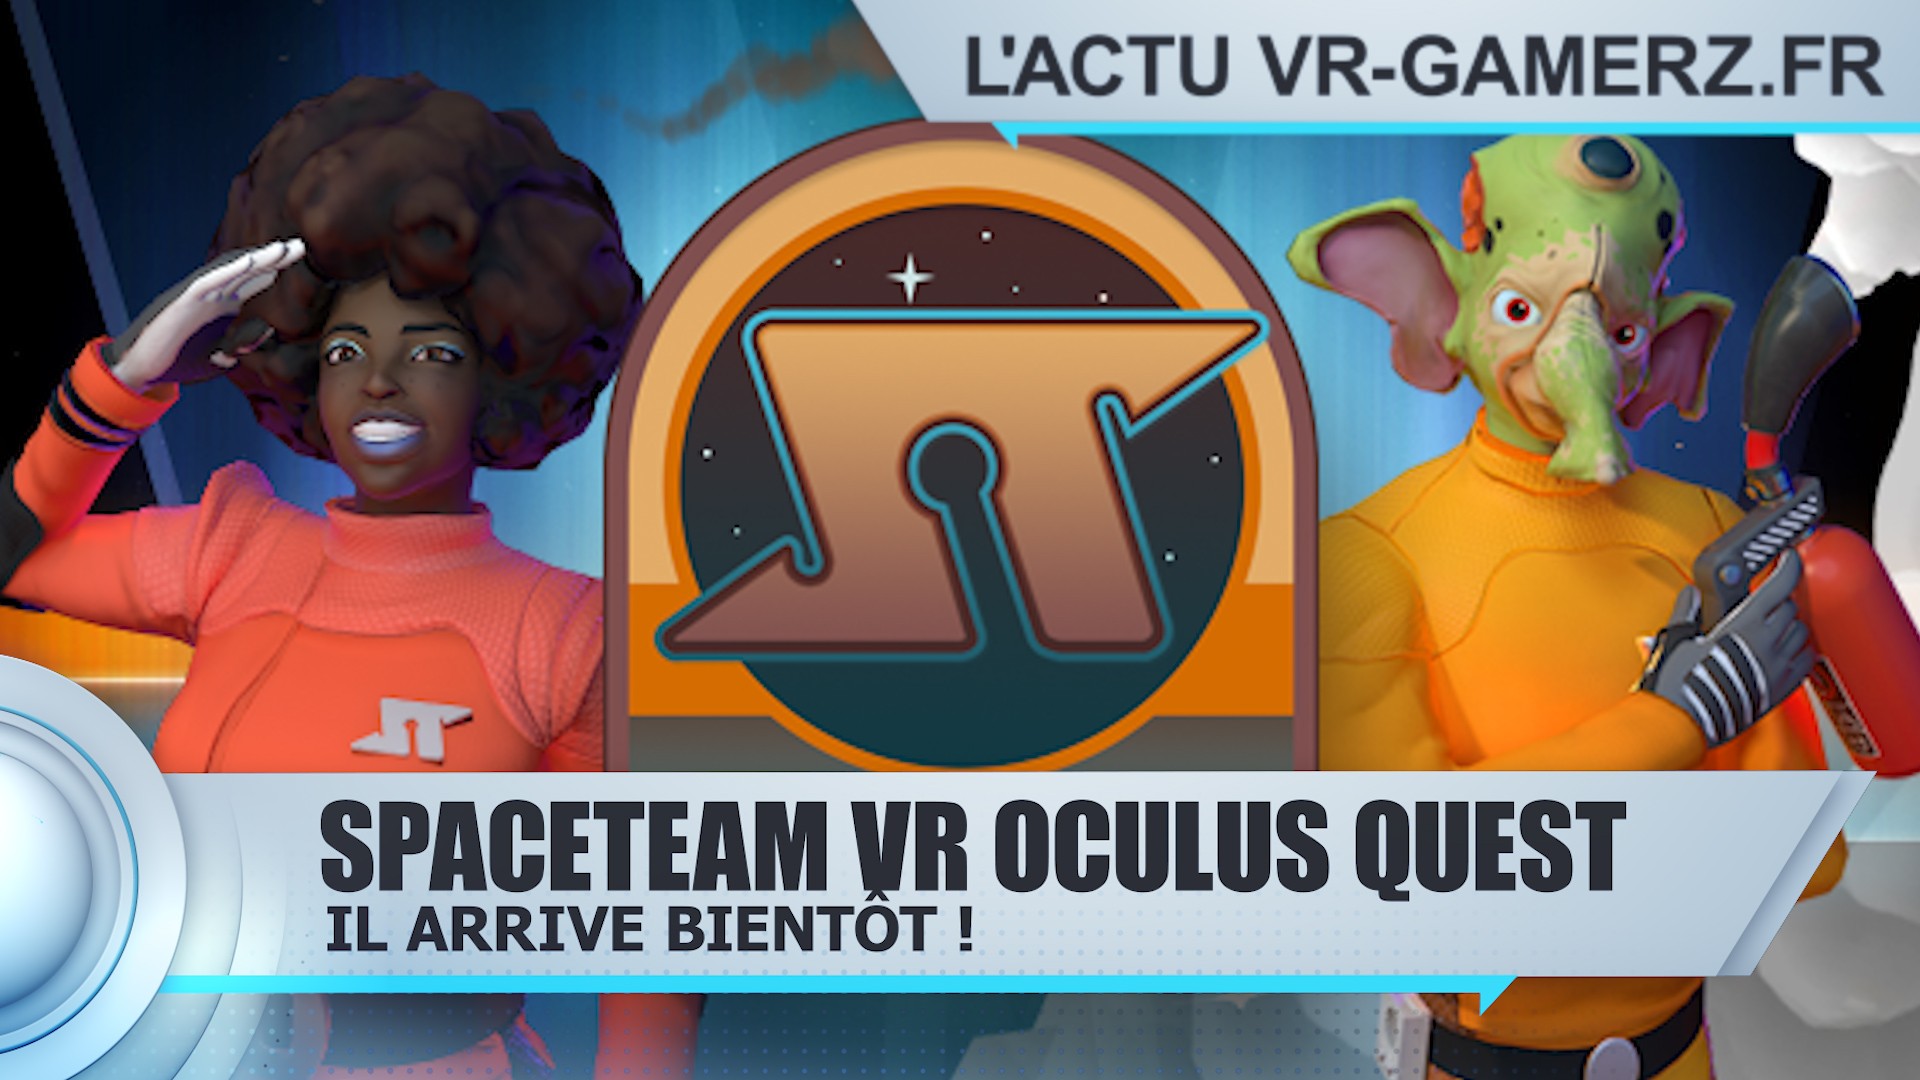 Spaceteam VR Oculus quest arrive bientôt